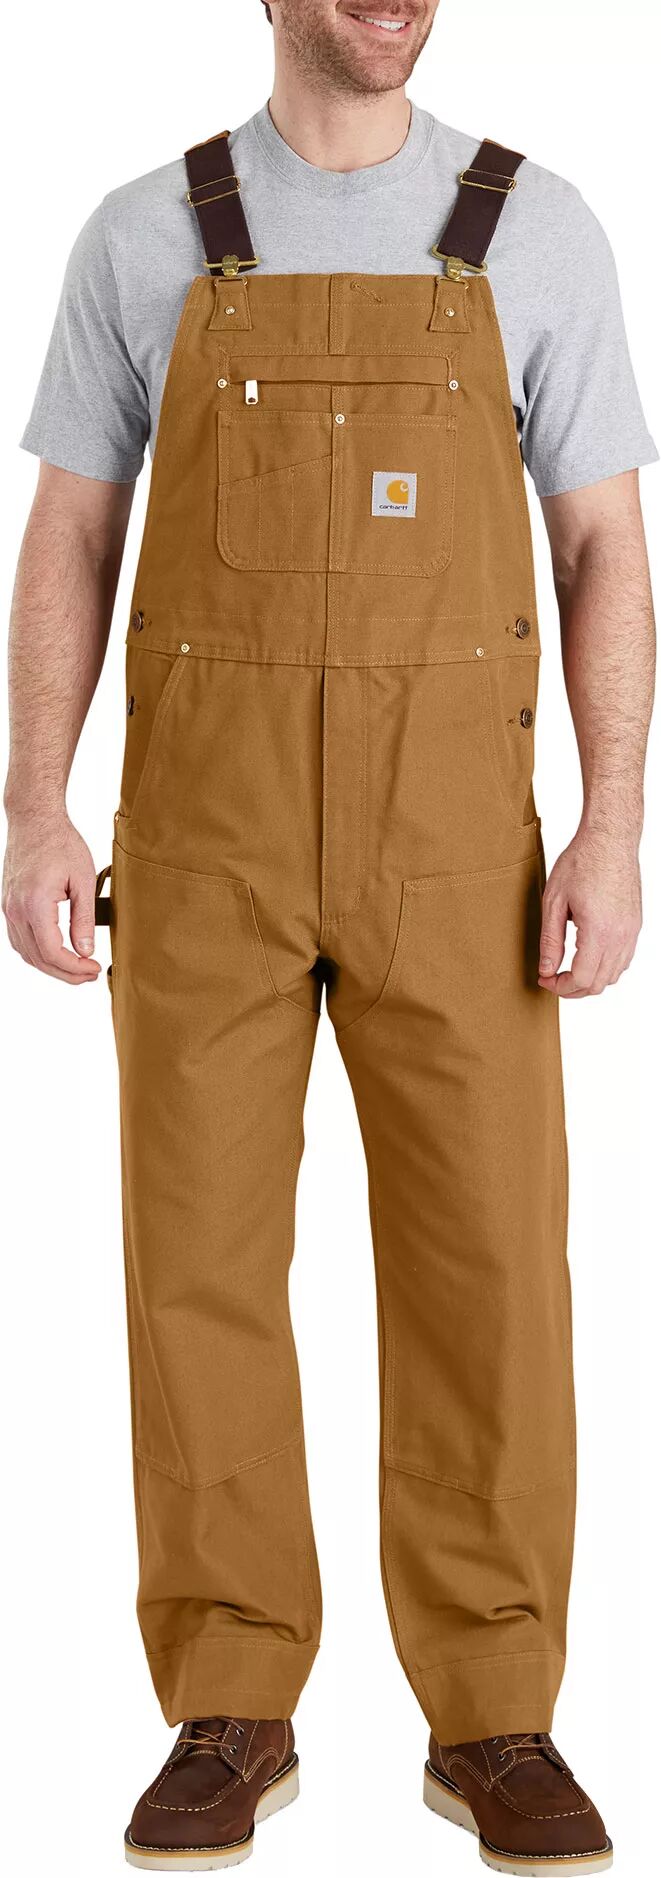 Carhartt Men's Duck Bib Overalls, Size 32, Brown